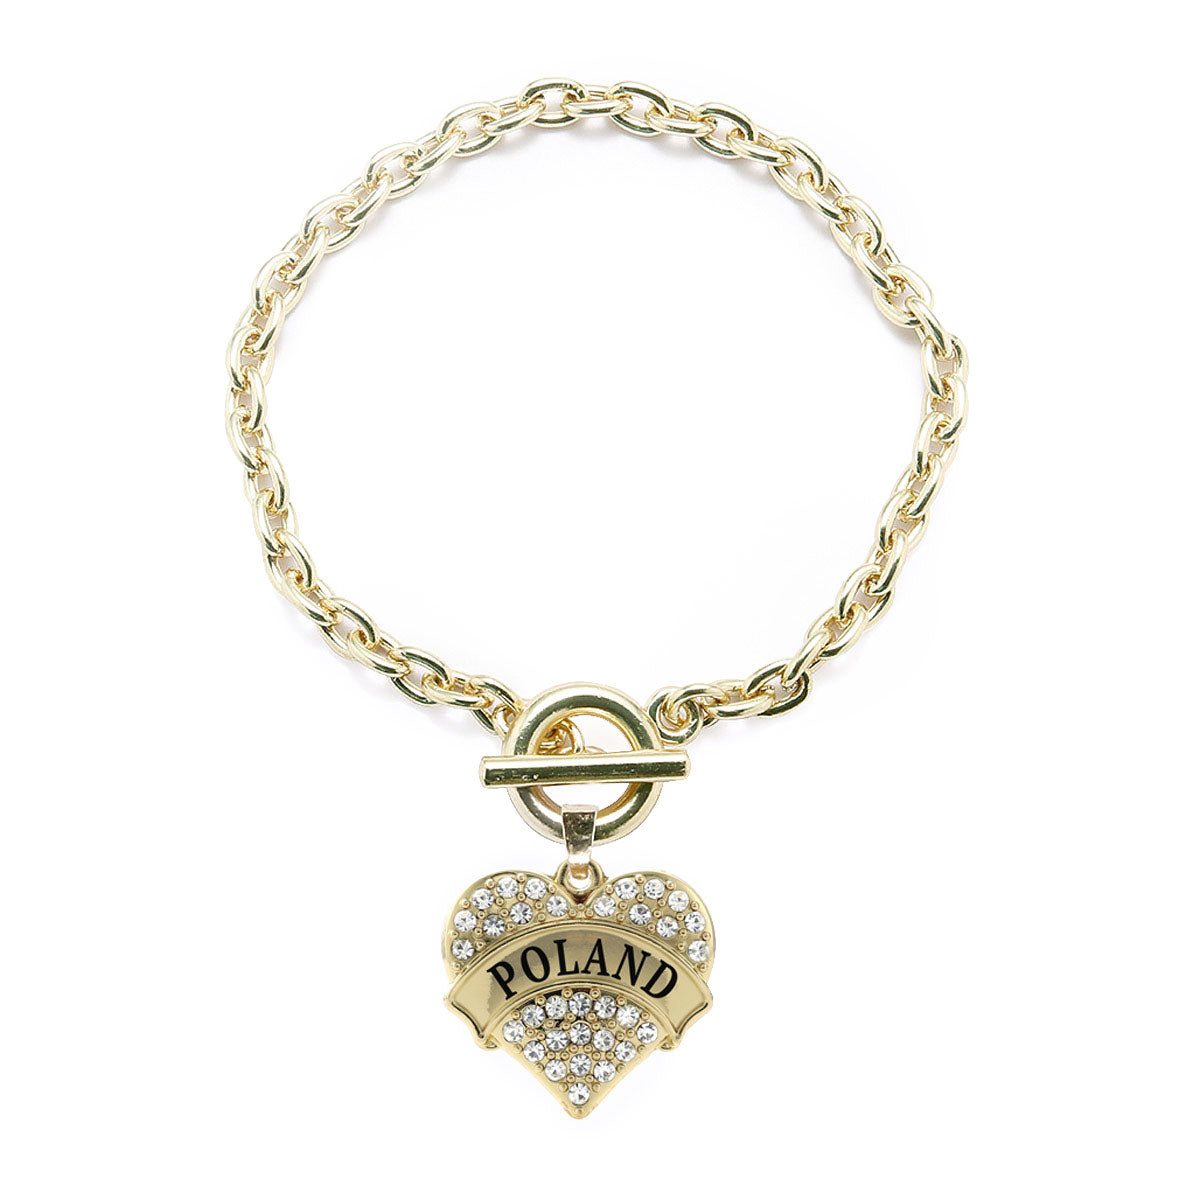 Gold Poland Pave Heart Charm Toggle Bracelet